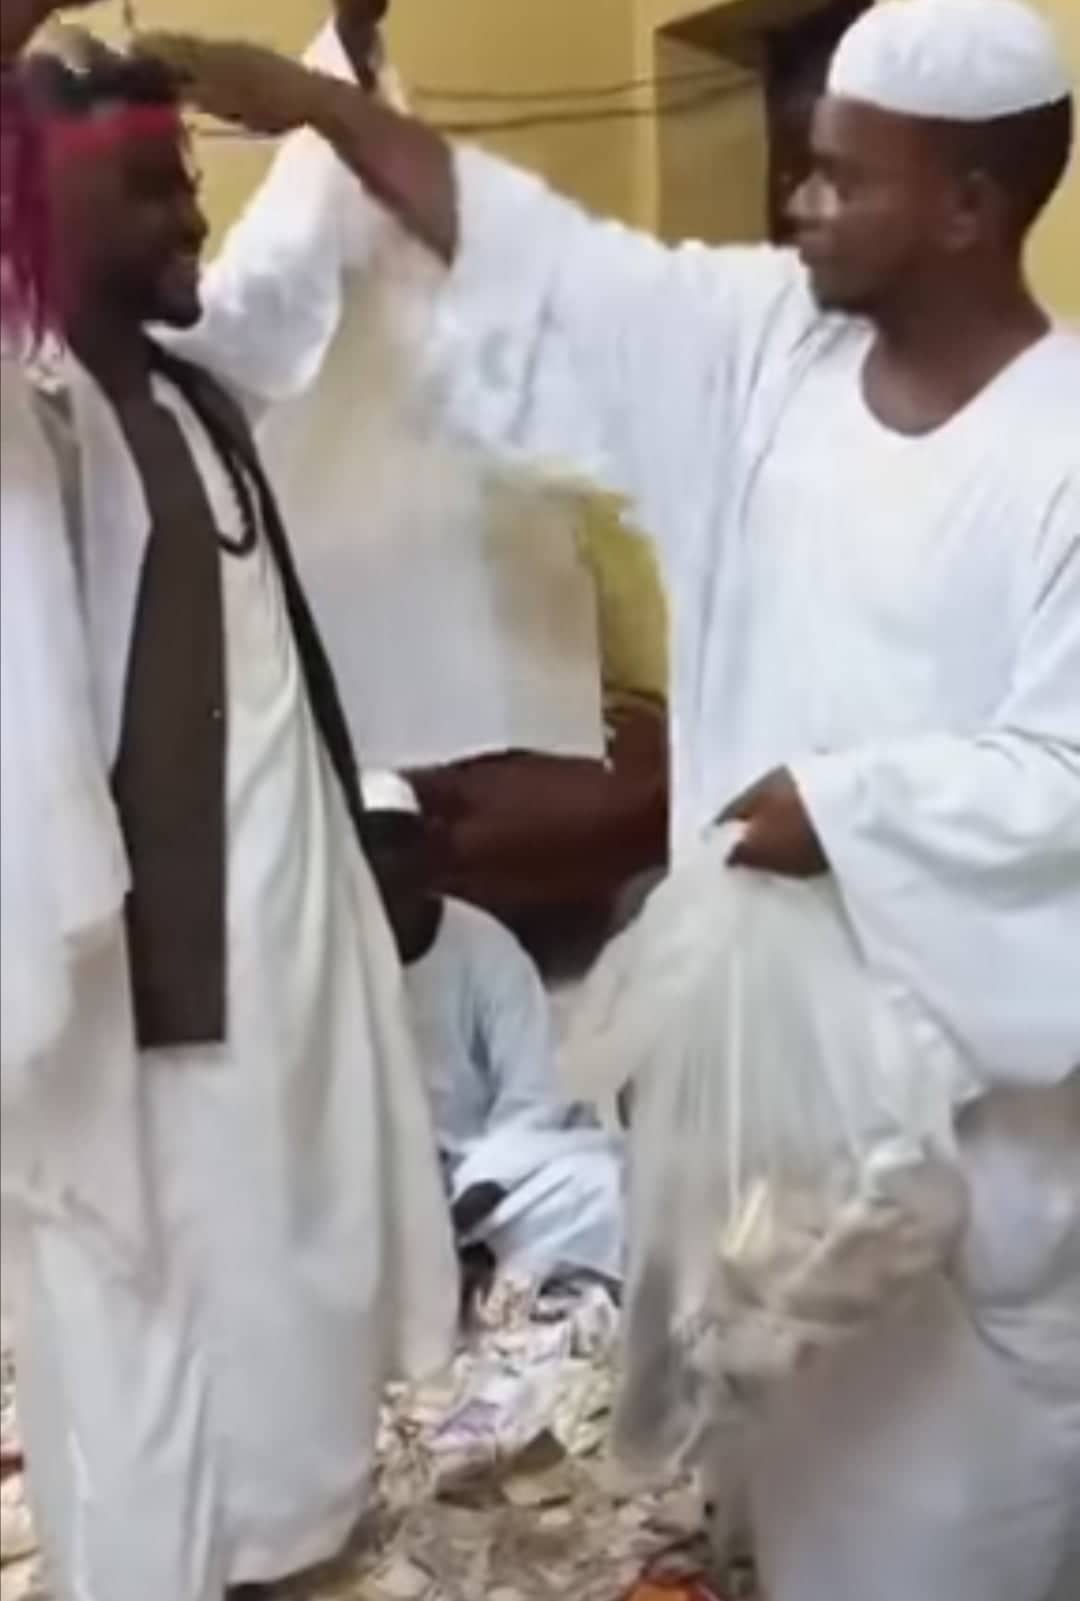 شاهد بالصورة والفيديو في نقطة وصفت بالأغلى والأكثر في التاريخ عريس سوداني يغرق في الأموال